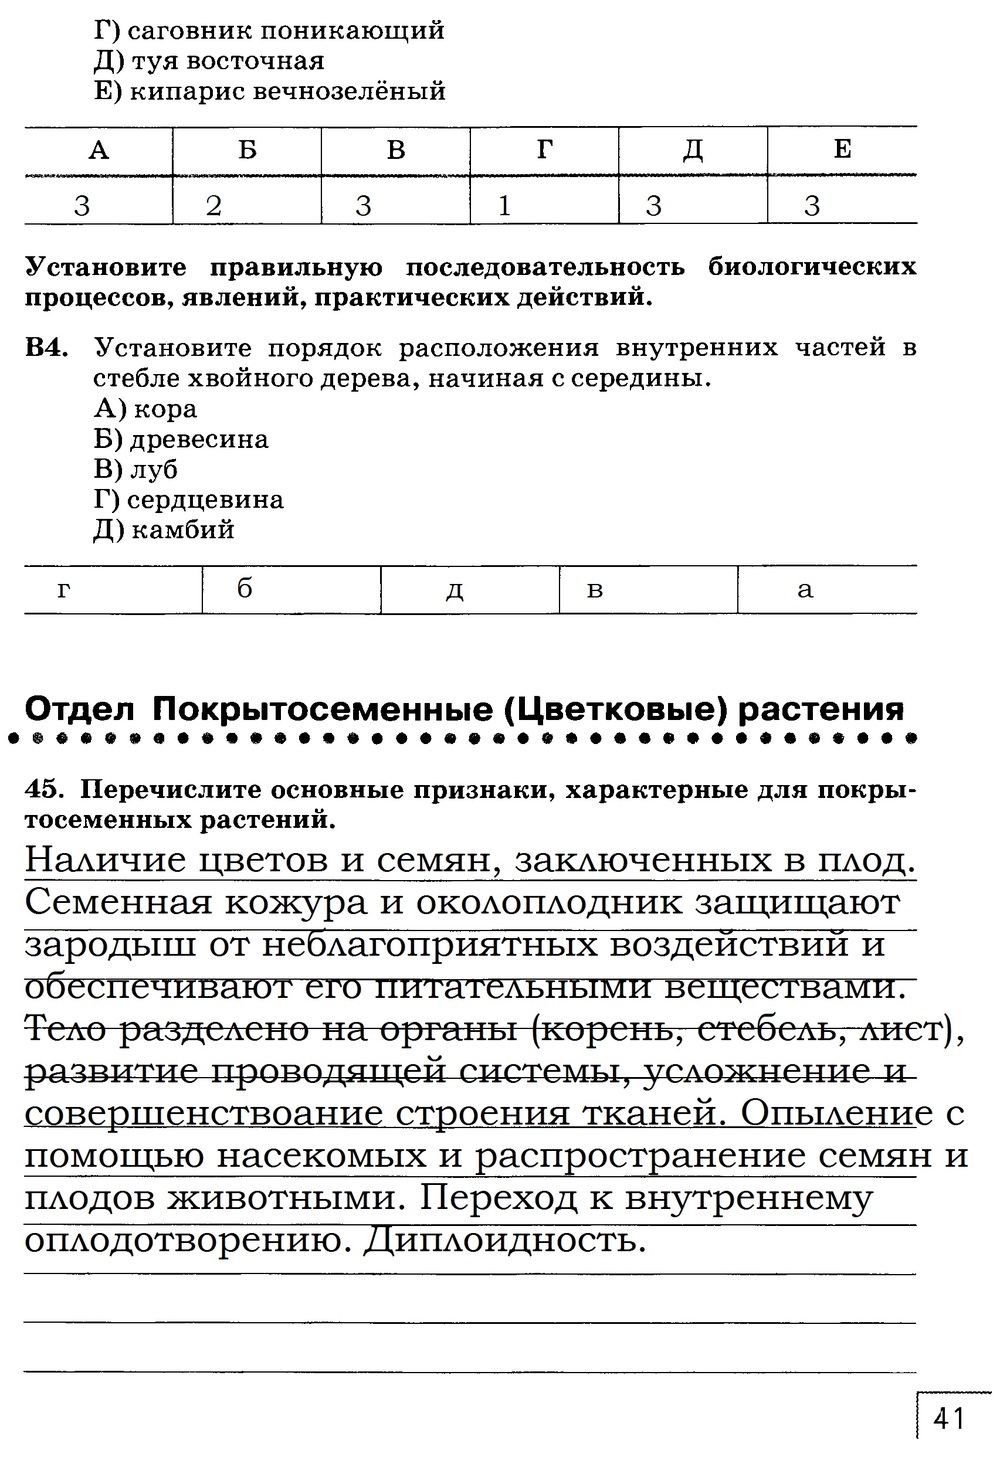 Рабочая тетрадь, 7 класс, Захаров В.Б., Сонин Н.И., 2015, задание: стр. 41